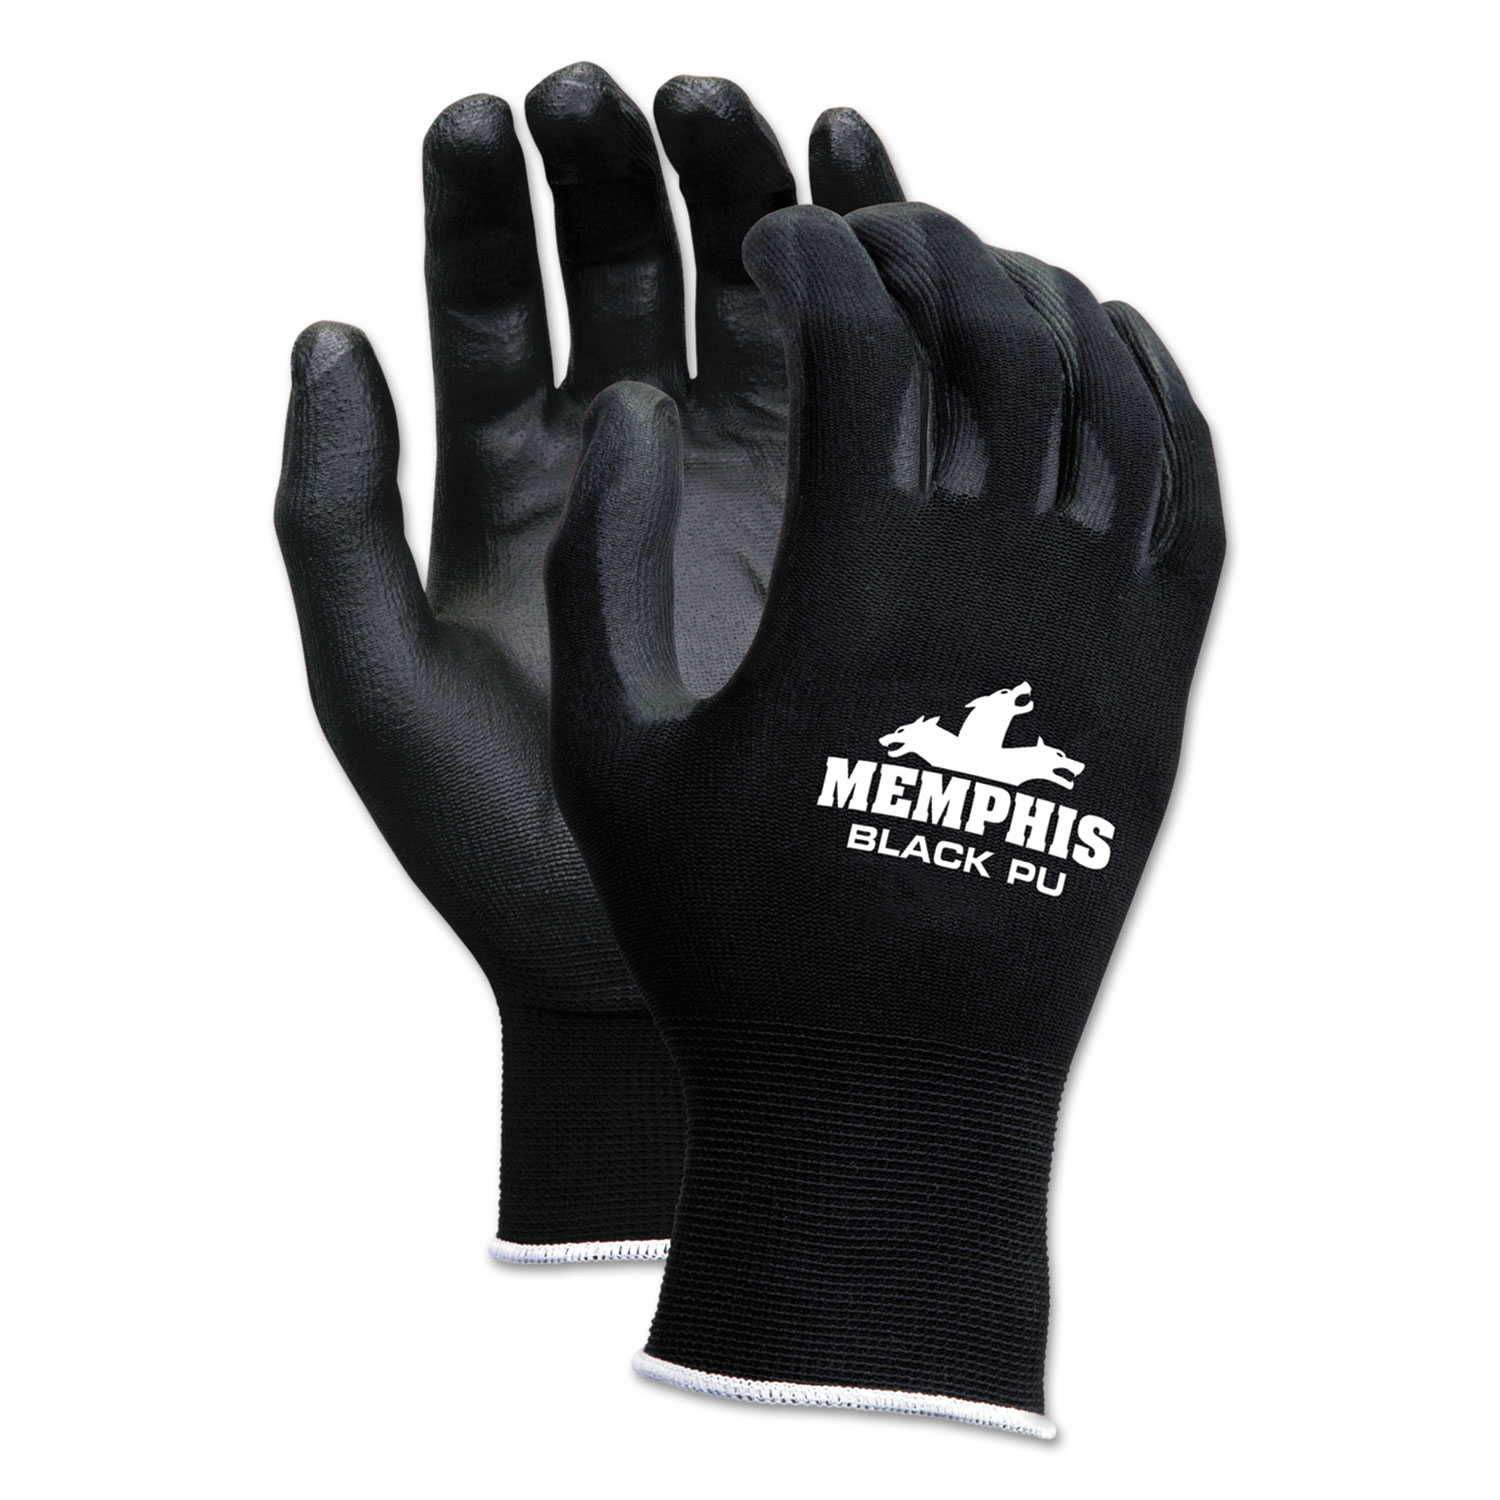 Economy Polyurethane Coated Gloves 11-GY-XS